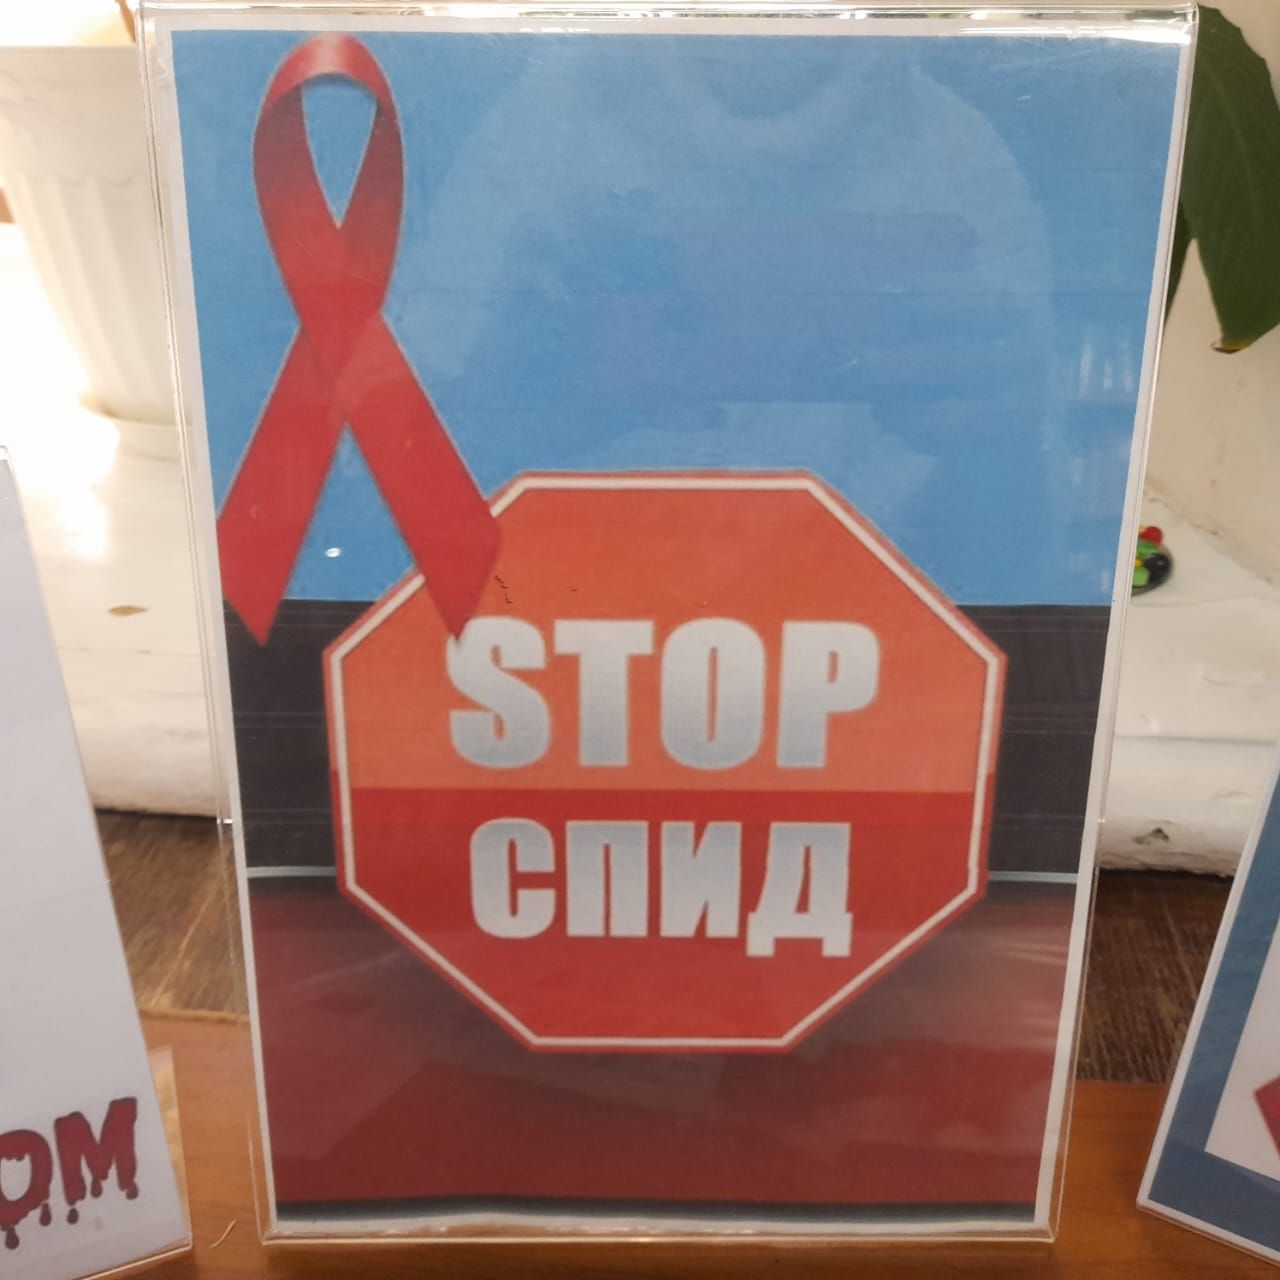 Всемирный день борьбы со СПИДом отмечается 1 декабря